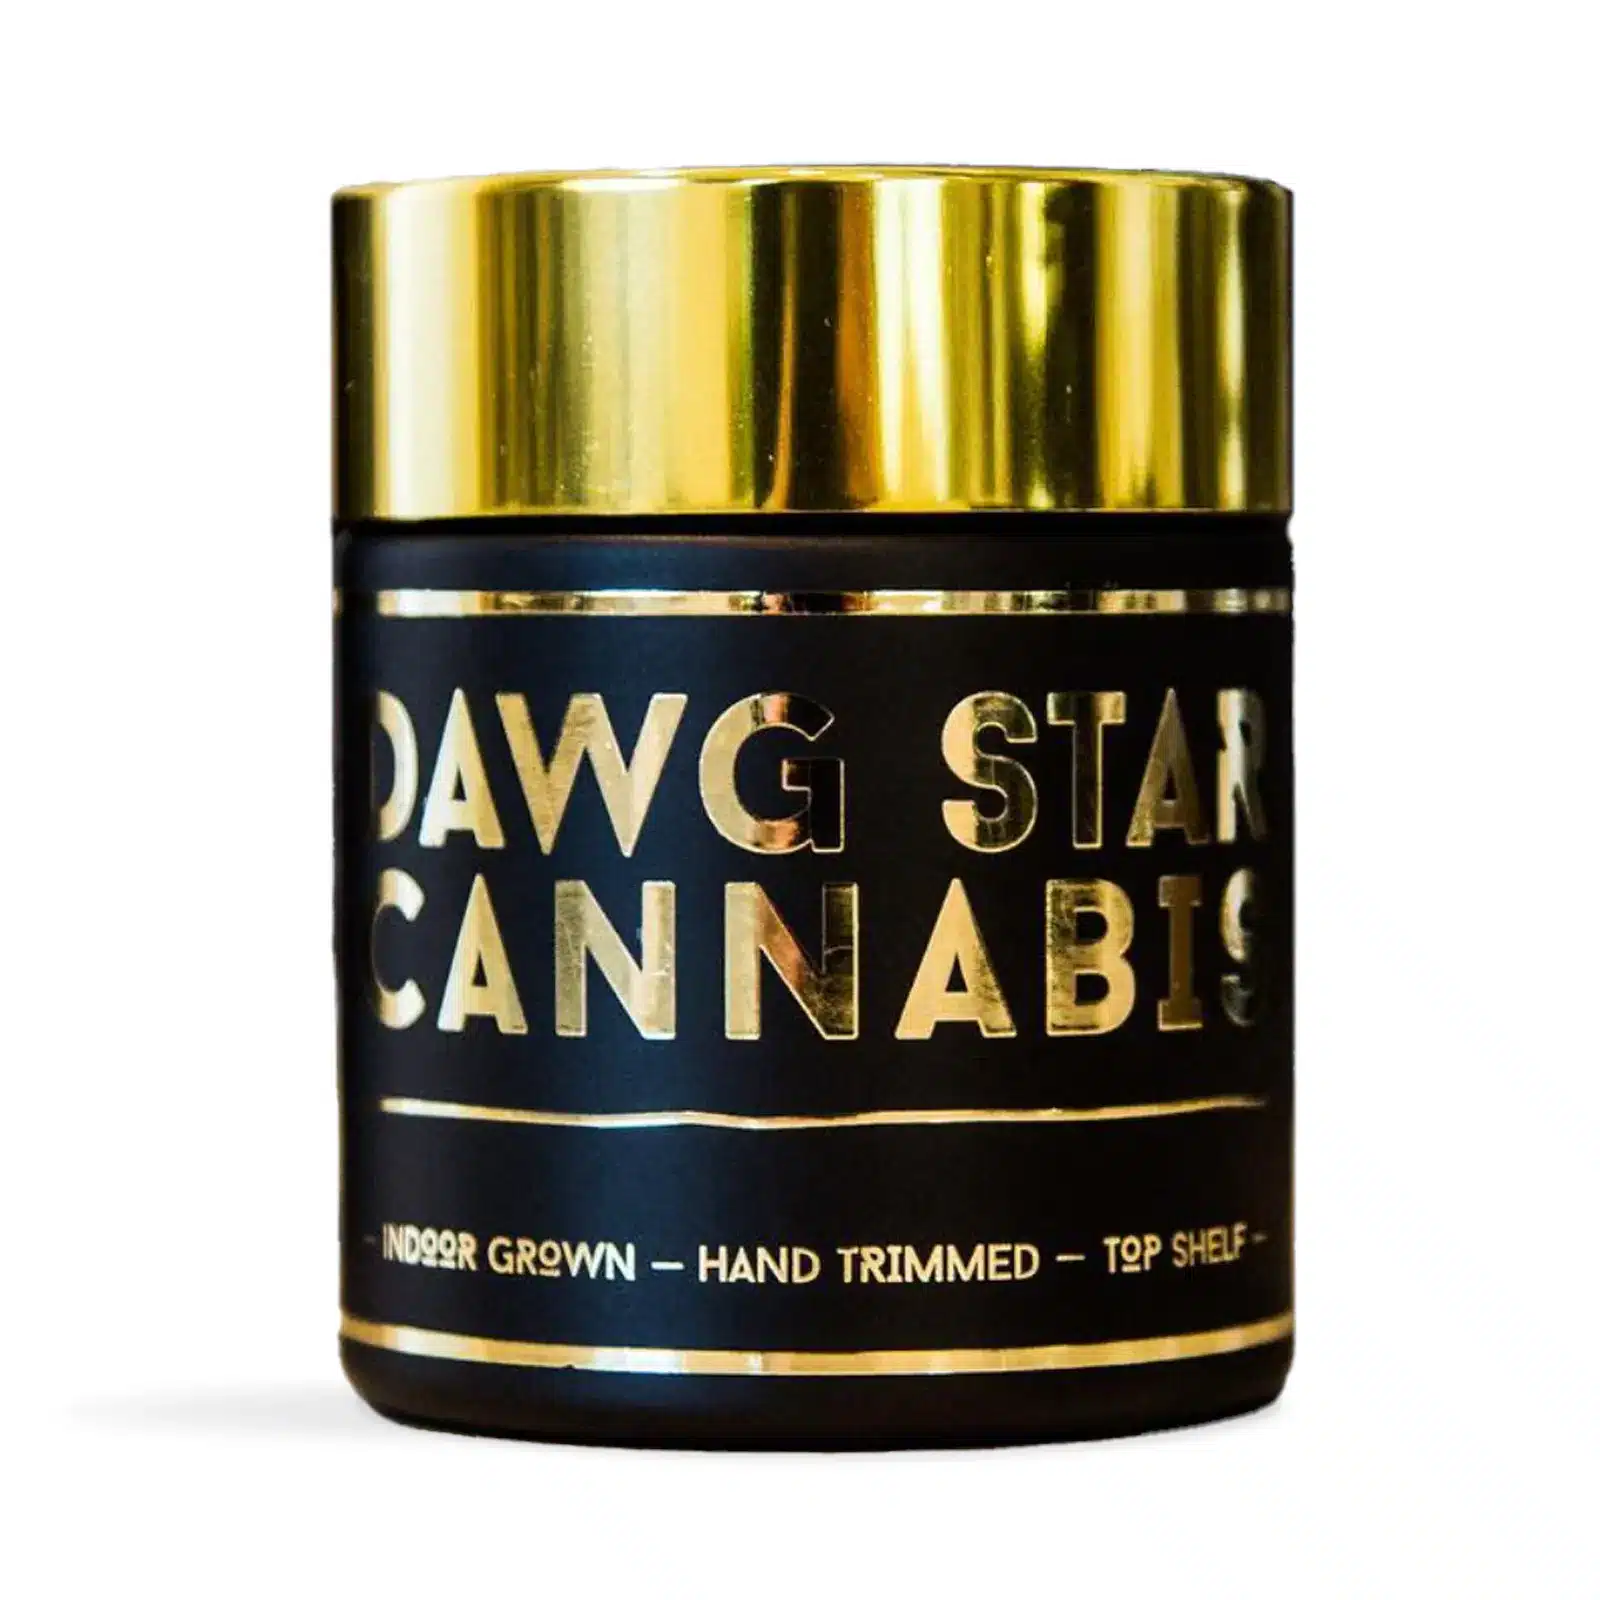 Dawg Star Cannabis Weed Hybrid Strain Dr.Who